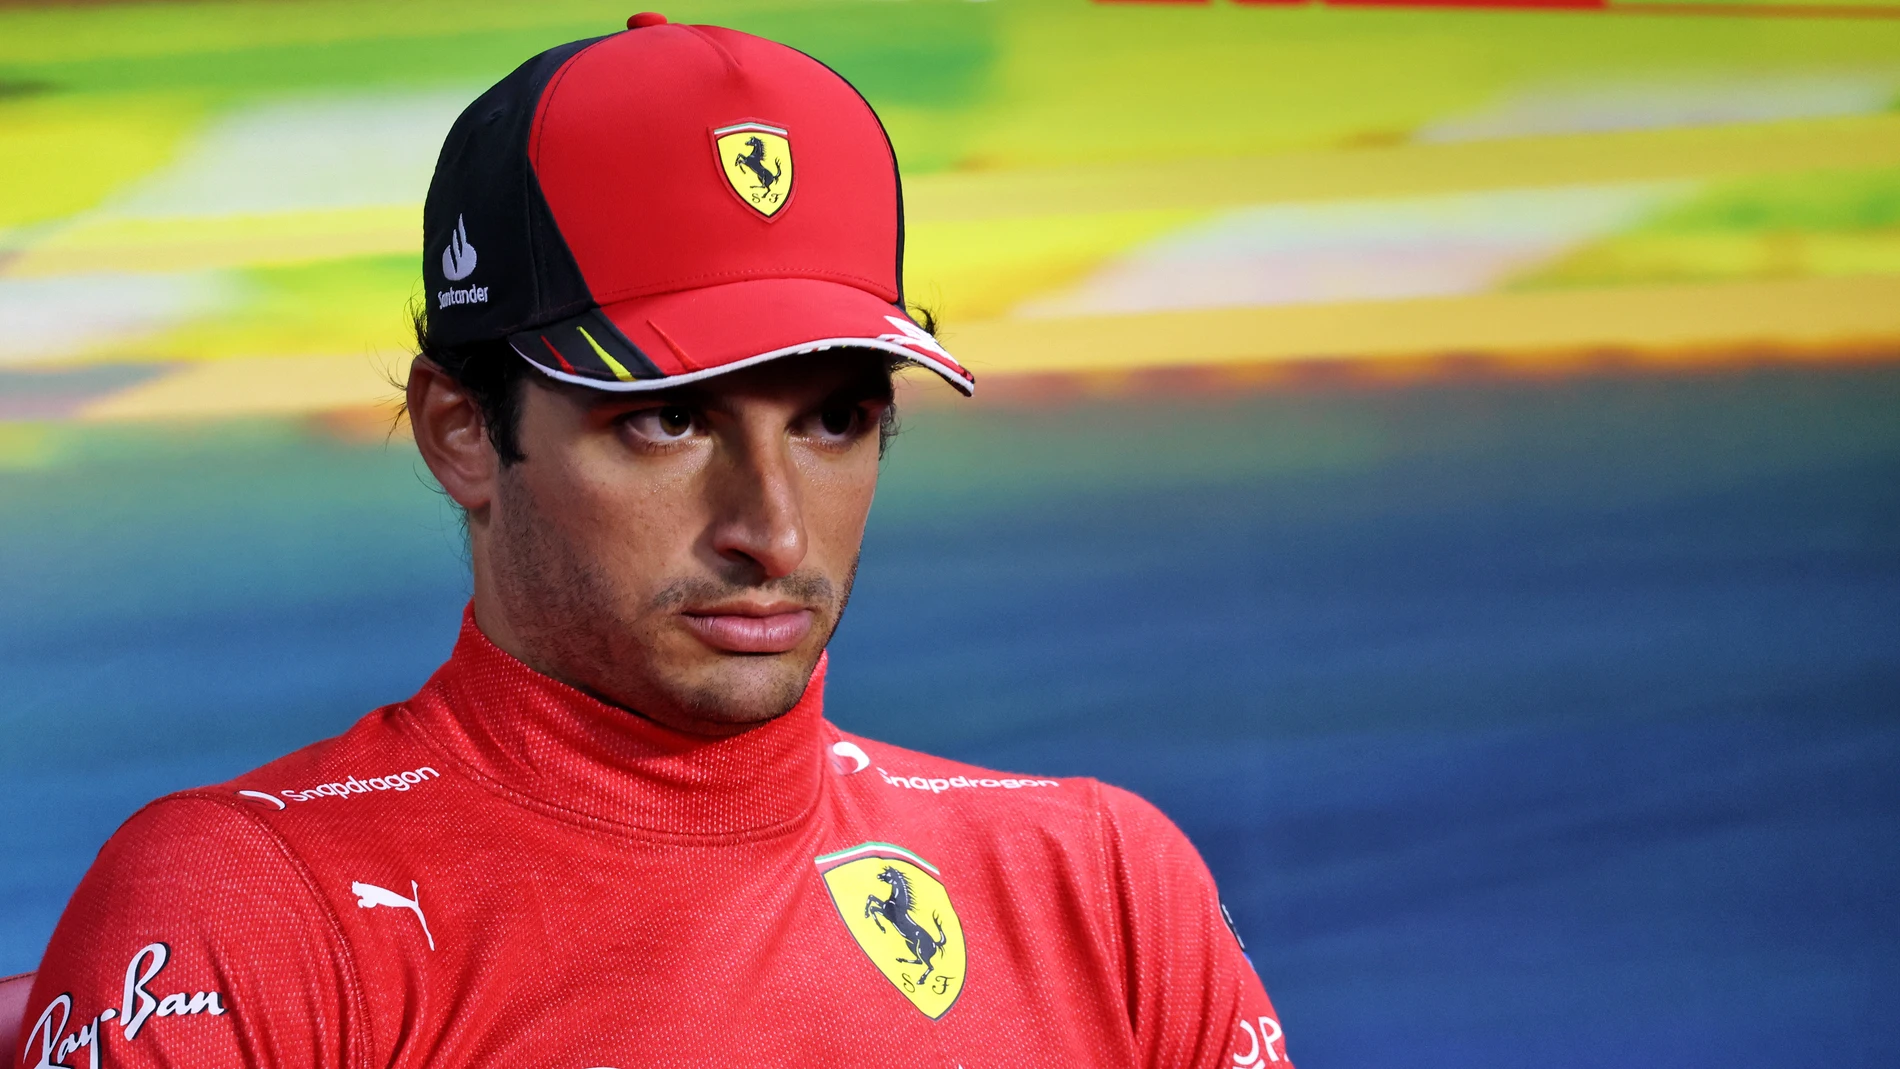 Problemas para Sainz en Ferrari: su principal aliado dimite